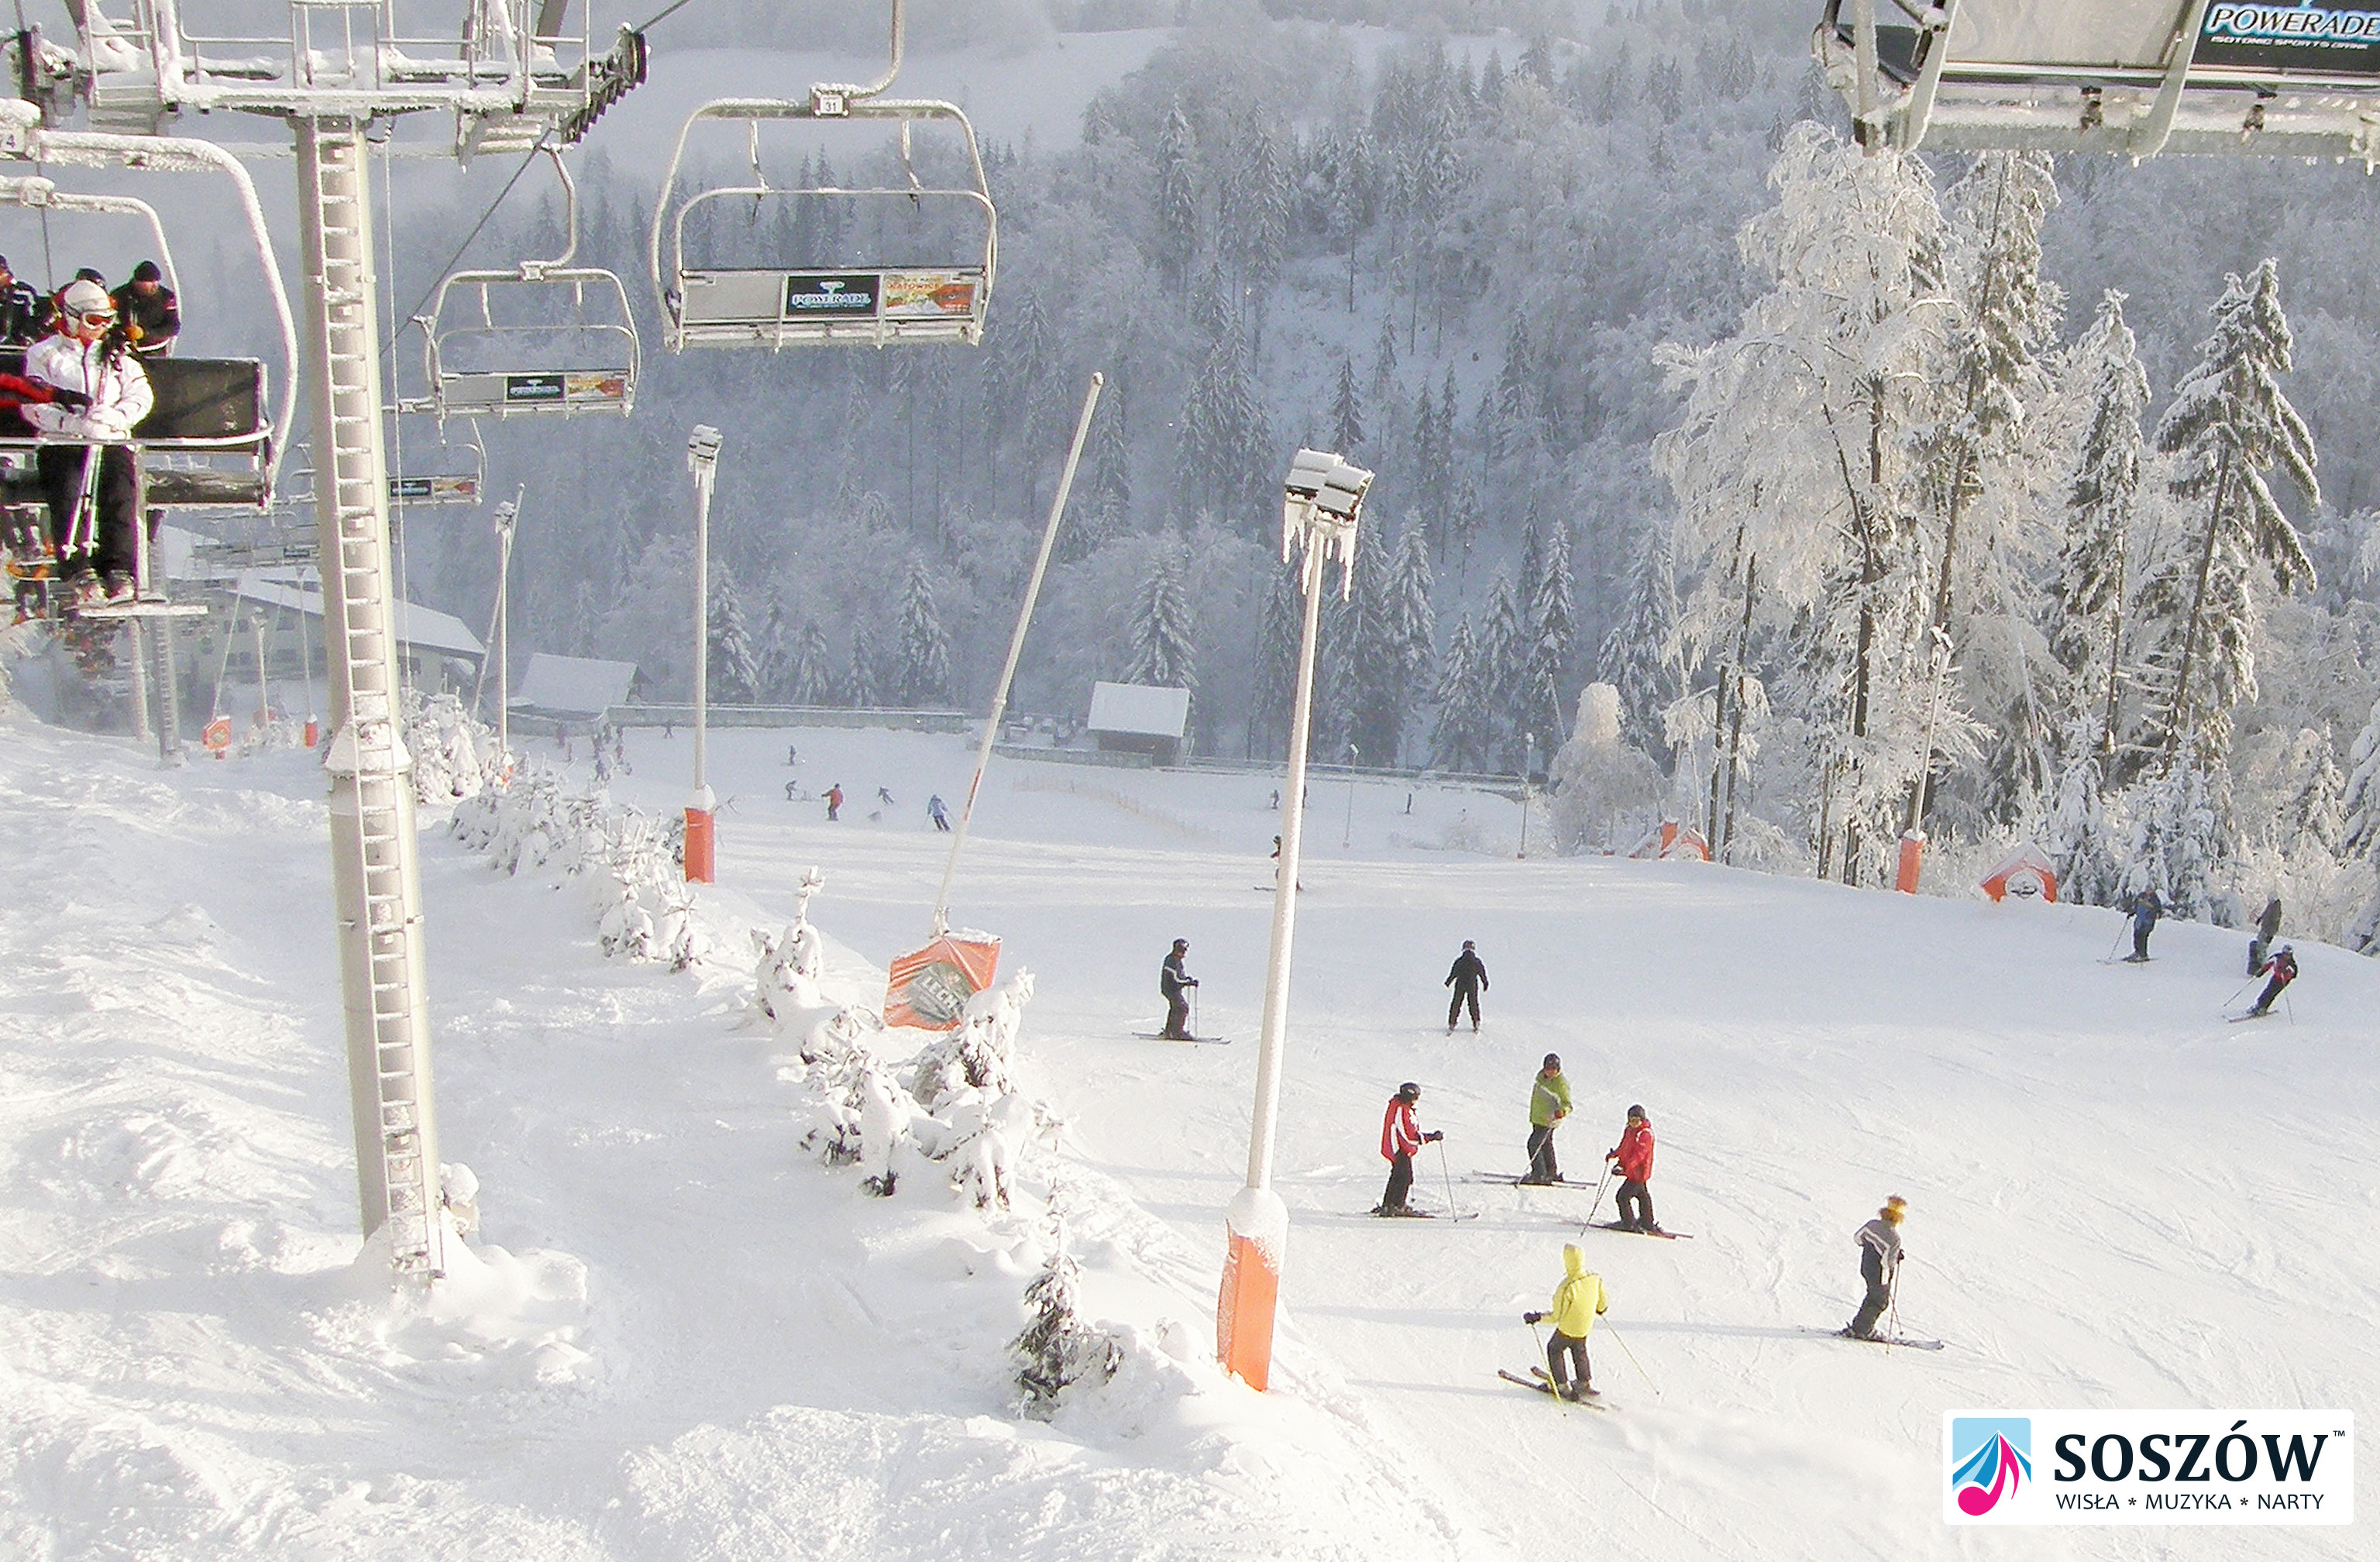 Сошув имеет более 6 км лыжных трасс, предлагают: лыжный детский сад, индивидуальные тренировки и курсы